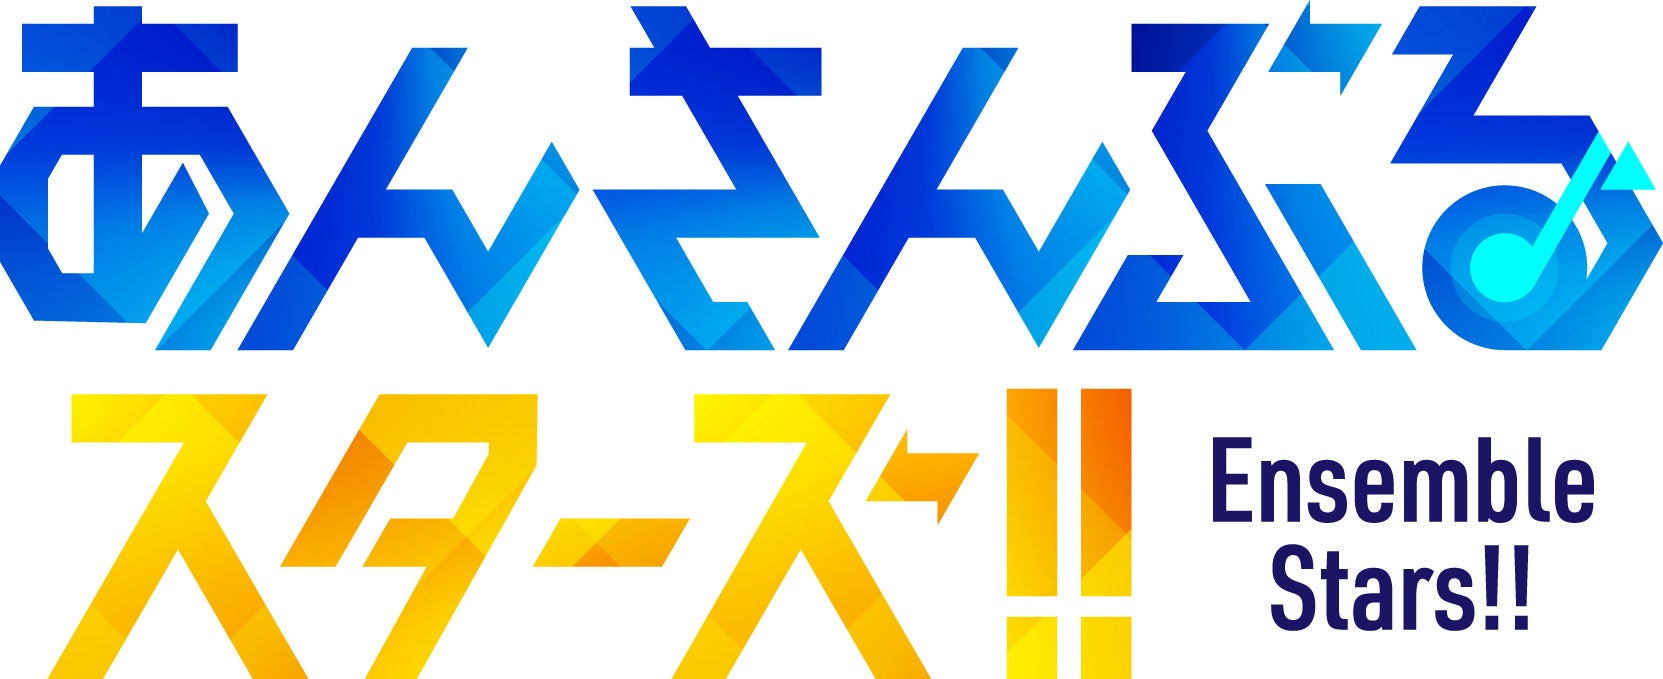 テレビアニメ『鬼滅の刃』より、ぬいぐるみ風のフィギュアCutie1に「煉獄杏寿郎」「宇髄天元」が登場。